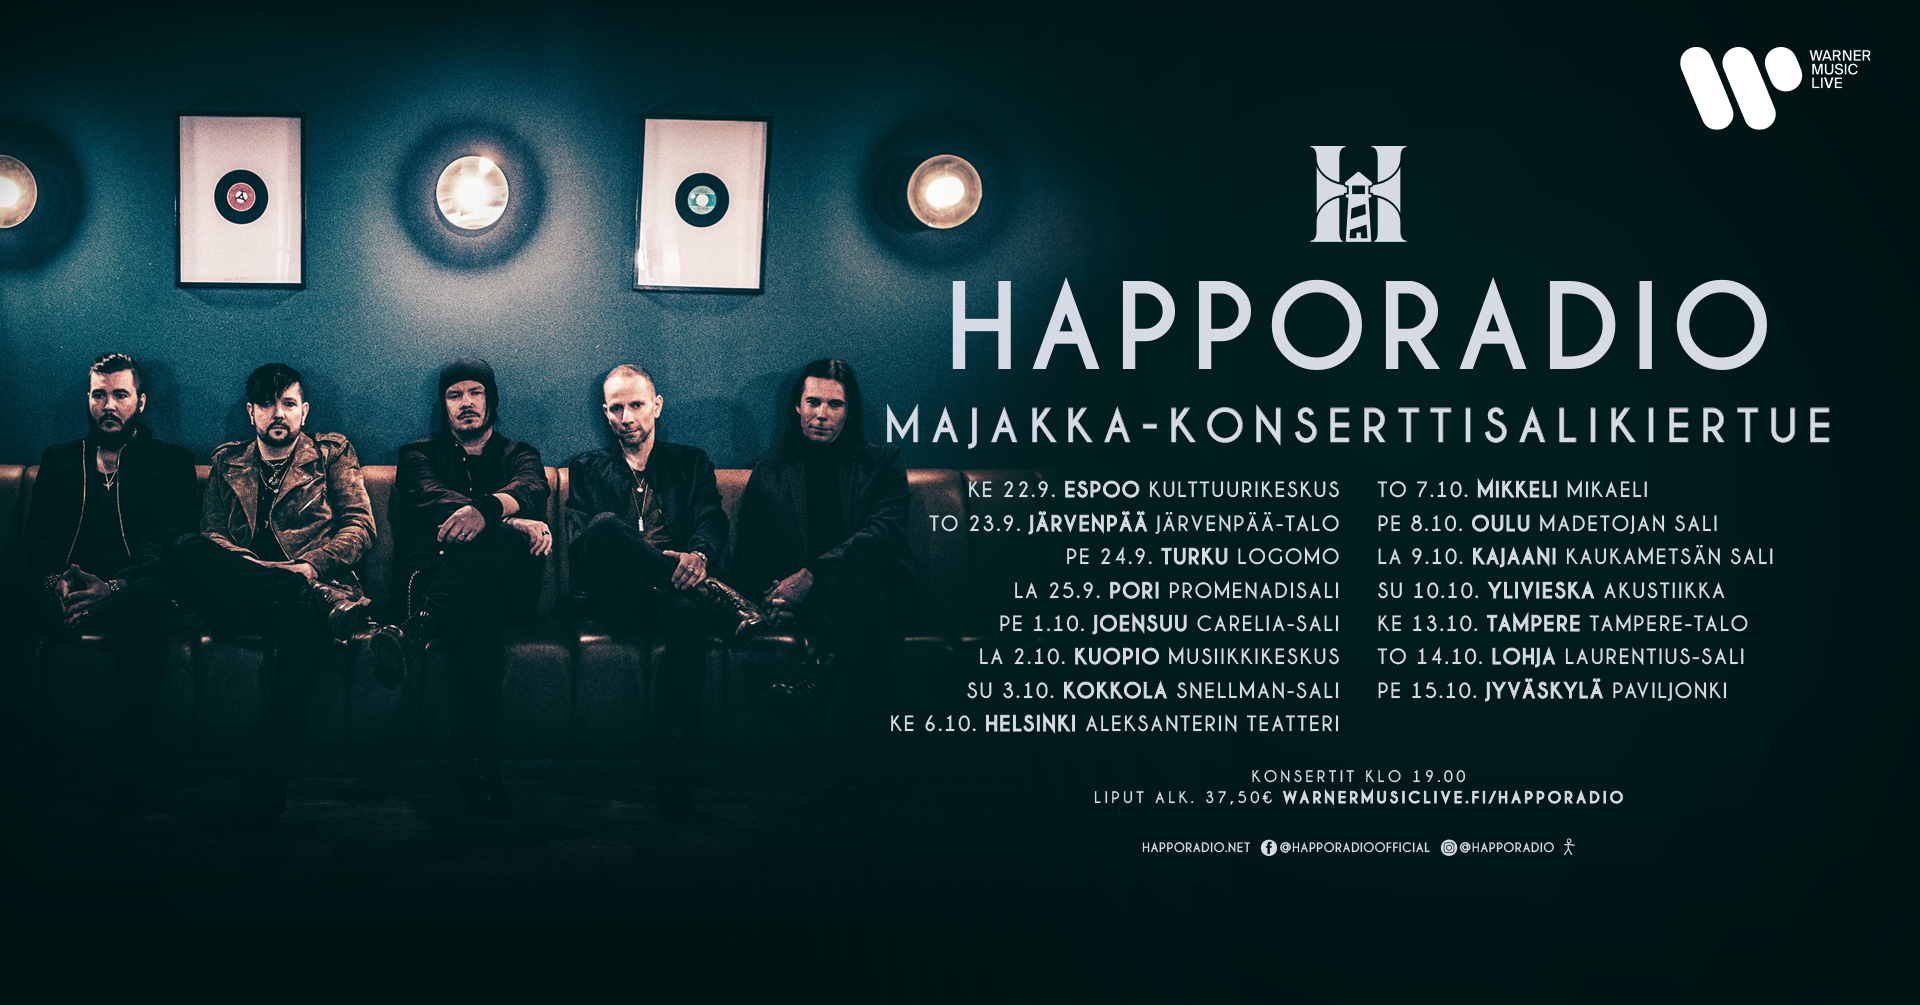 Happoradio - Majakka-konserttisalikiertue